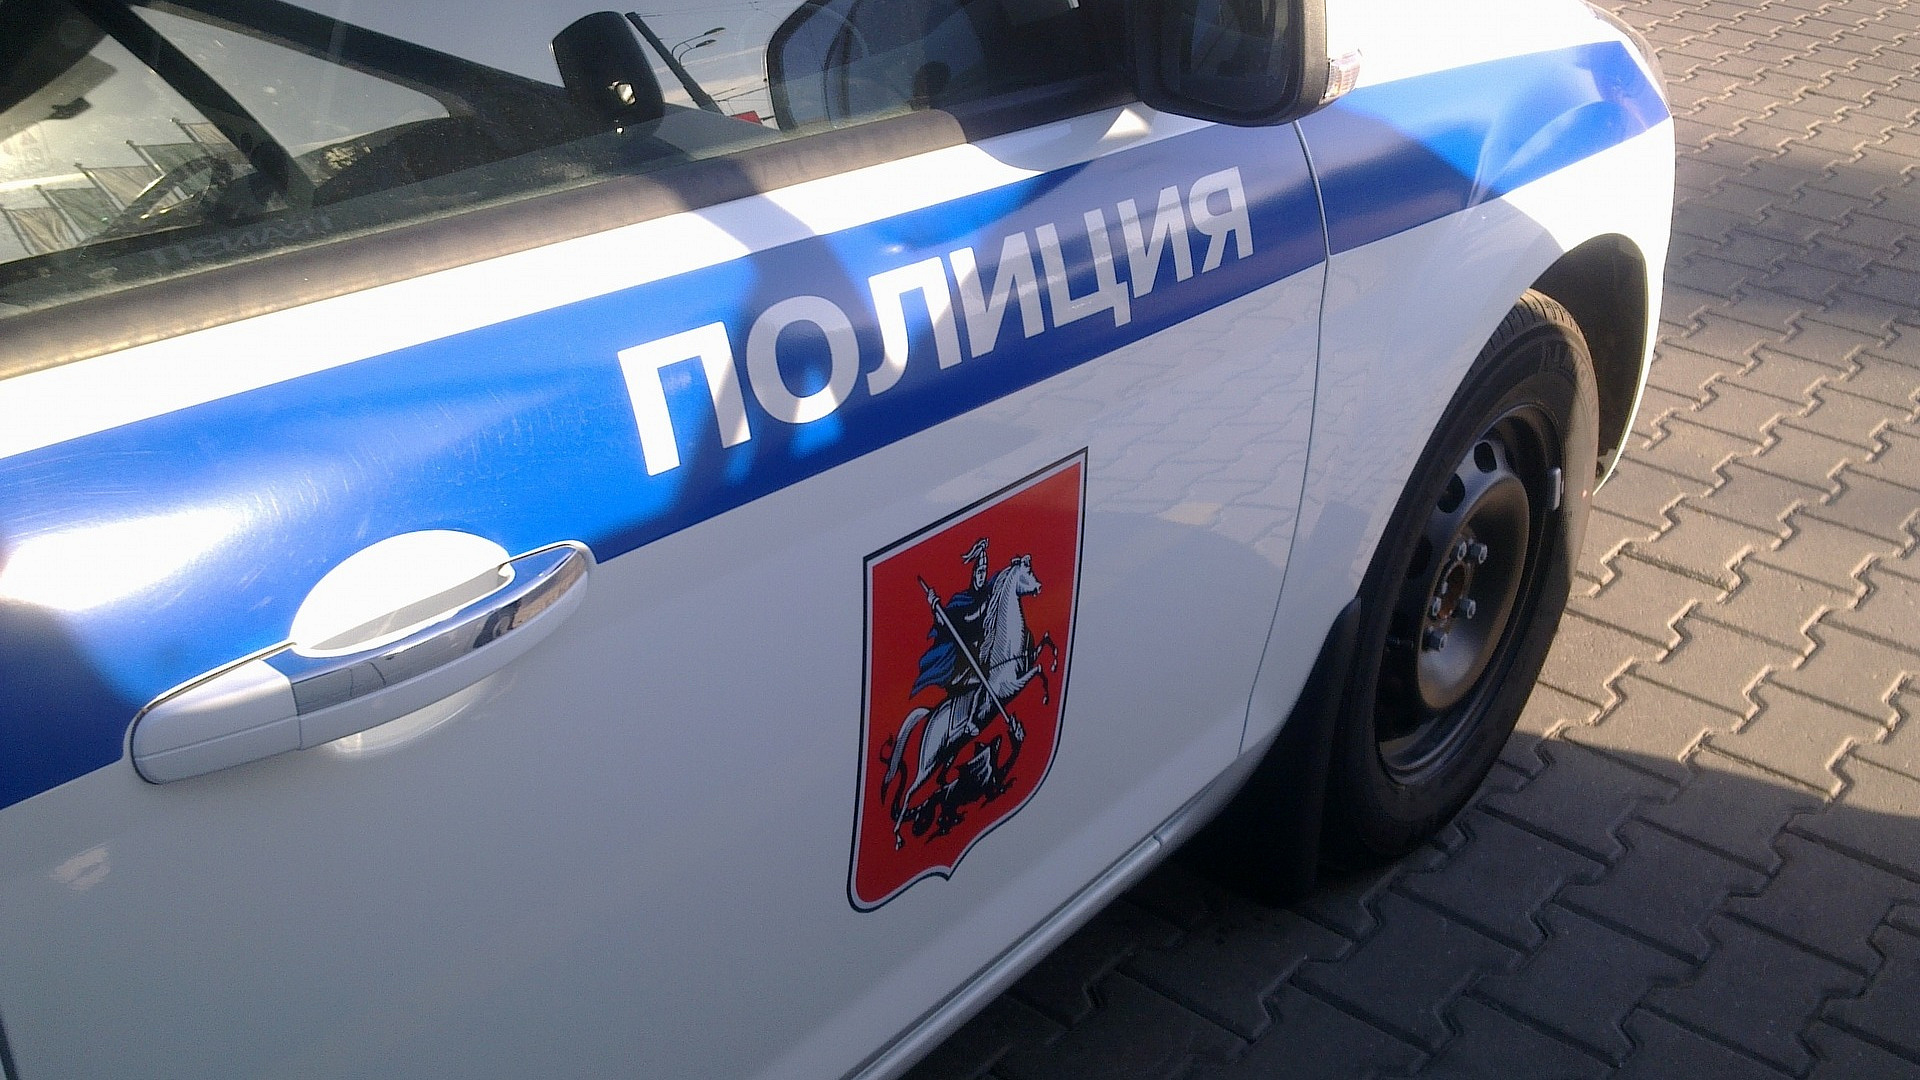 Двоих задержали после ограбления прохожего в Тверском районе